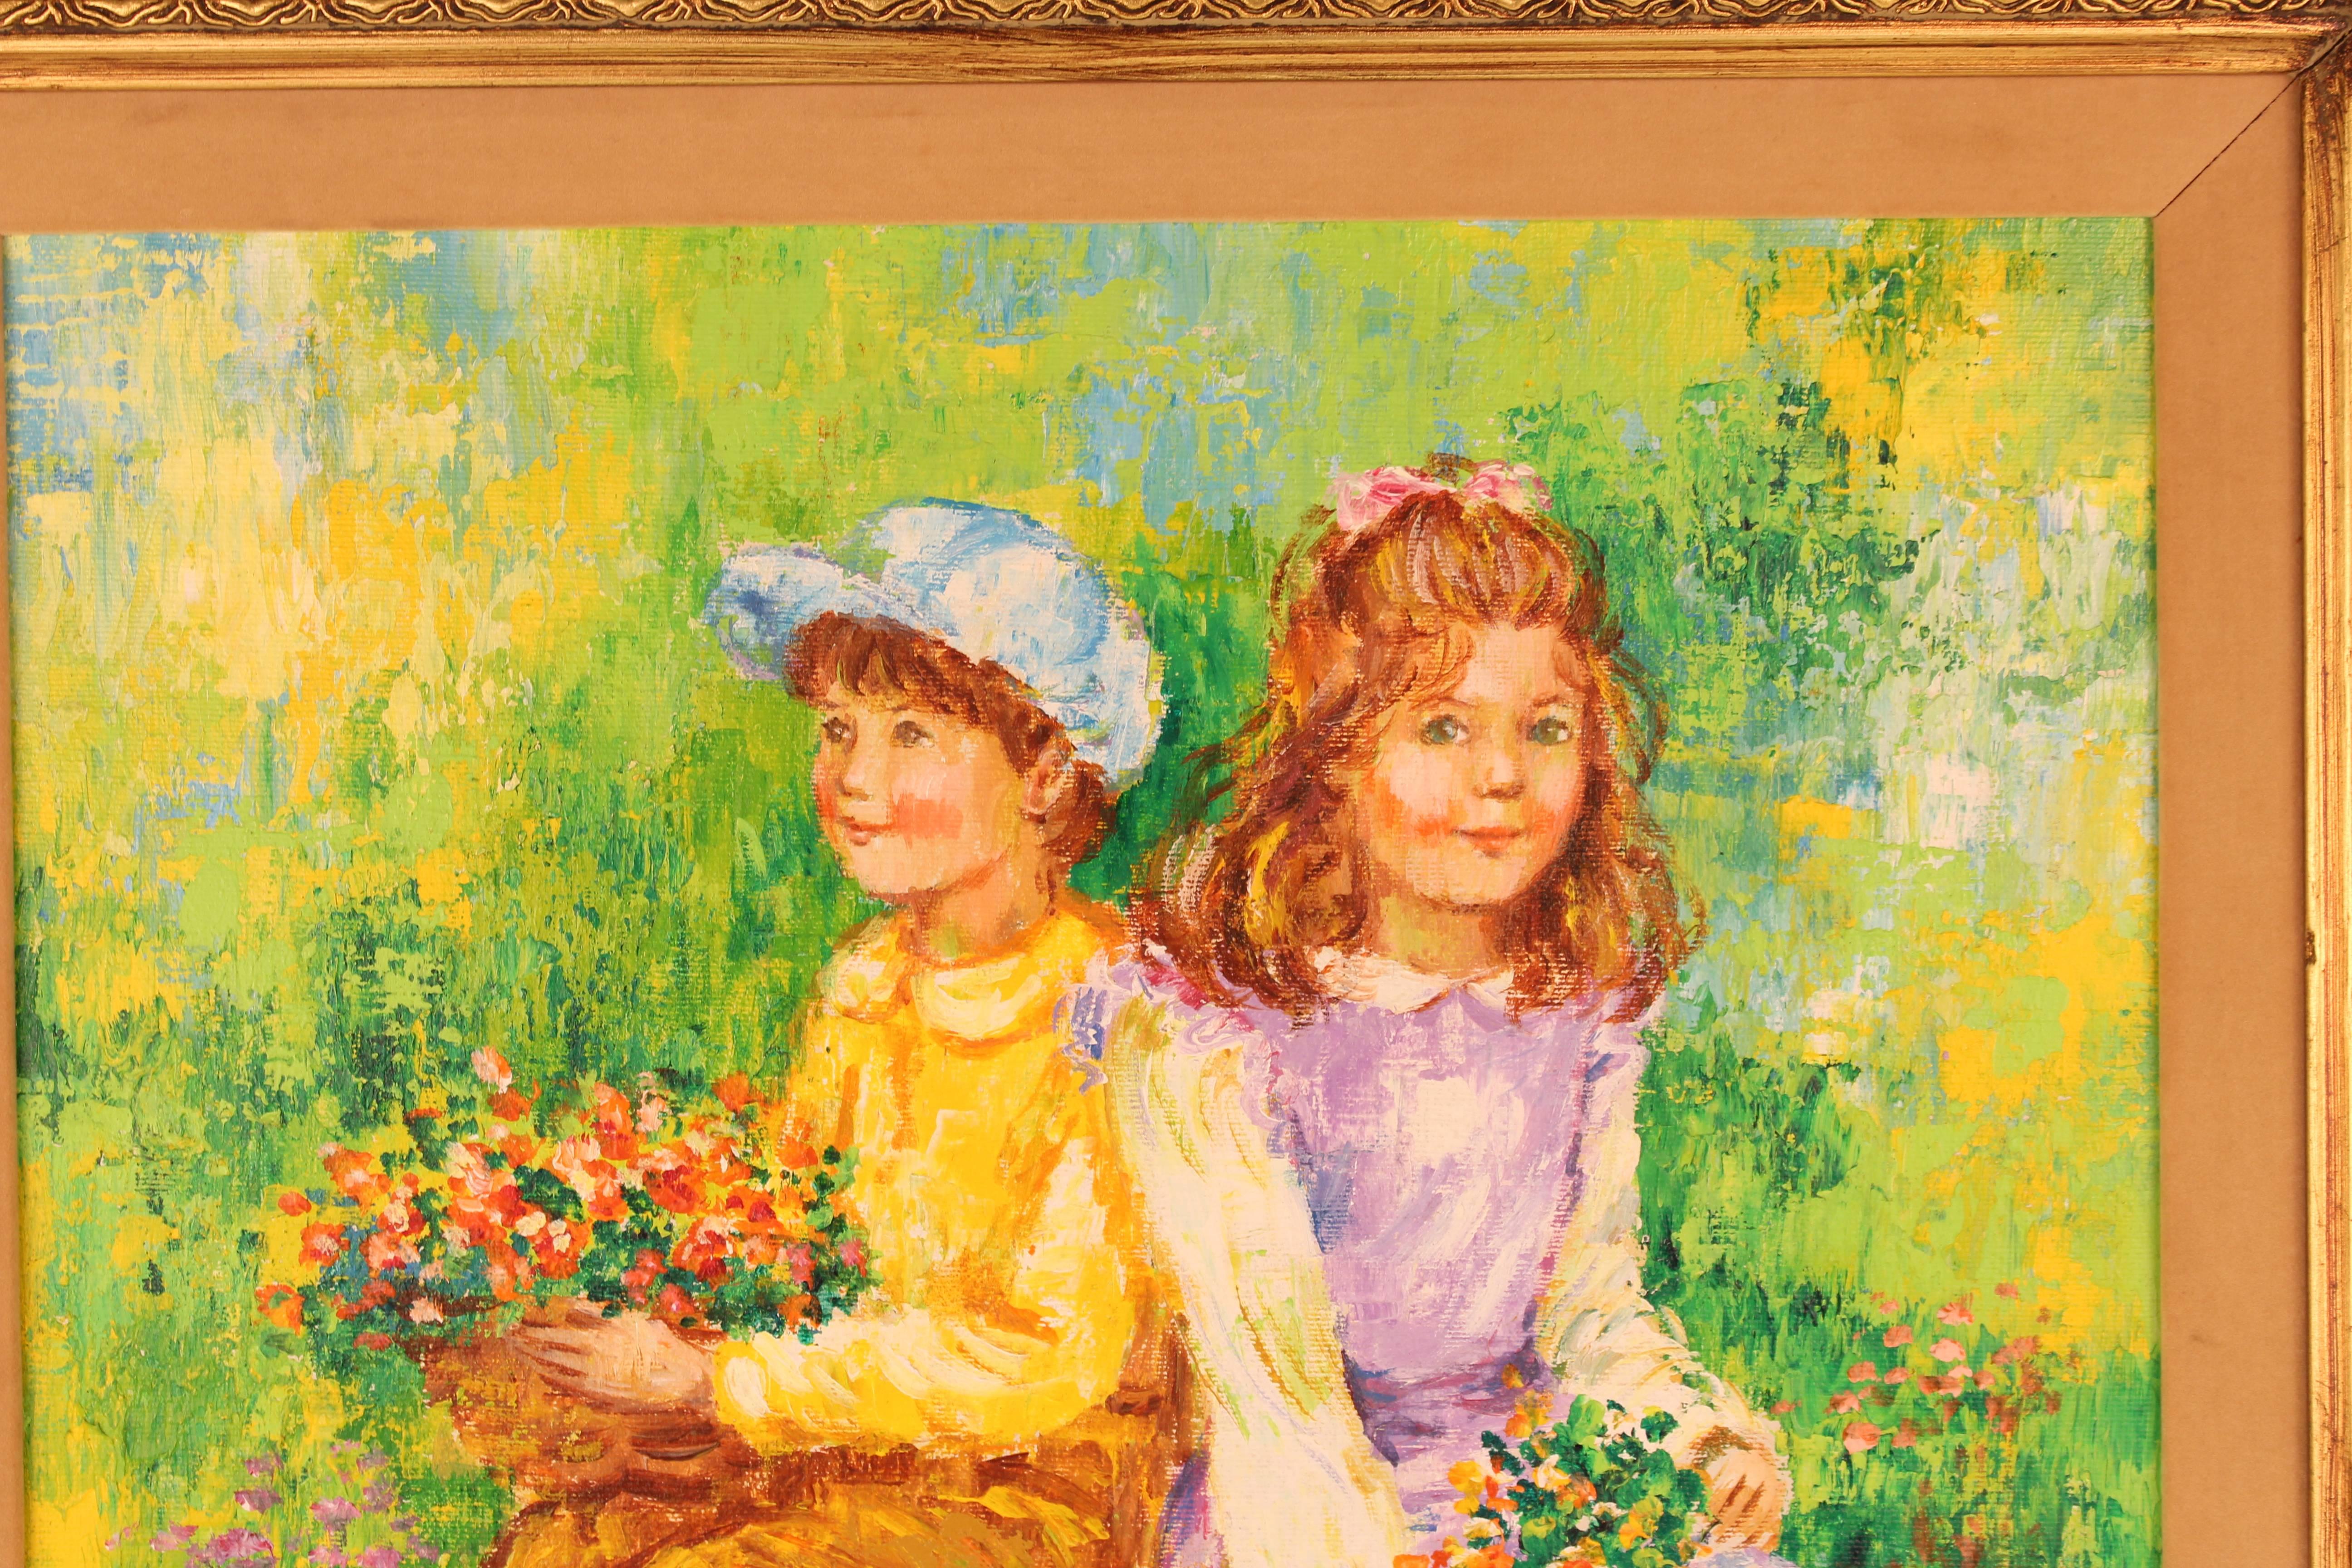 Américain  Peinture intitulée « Children Holding Flowers in a Field » (enfants tenant des fleurs dans un champ) de Karin Schaefers  en vente